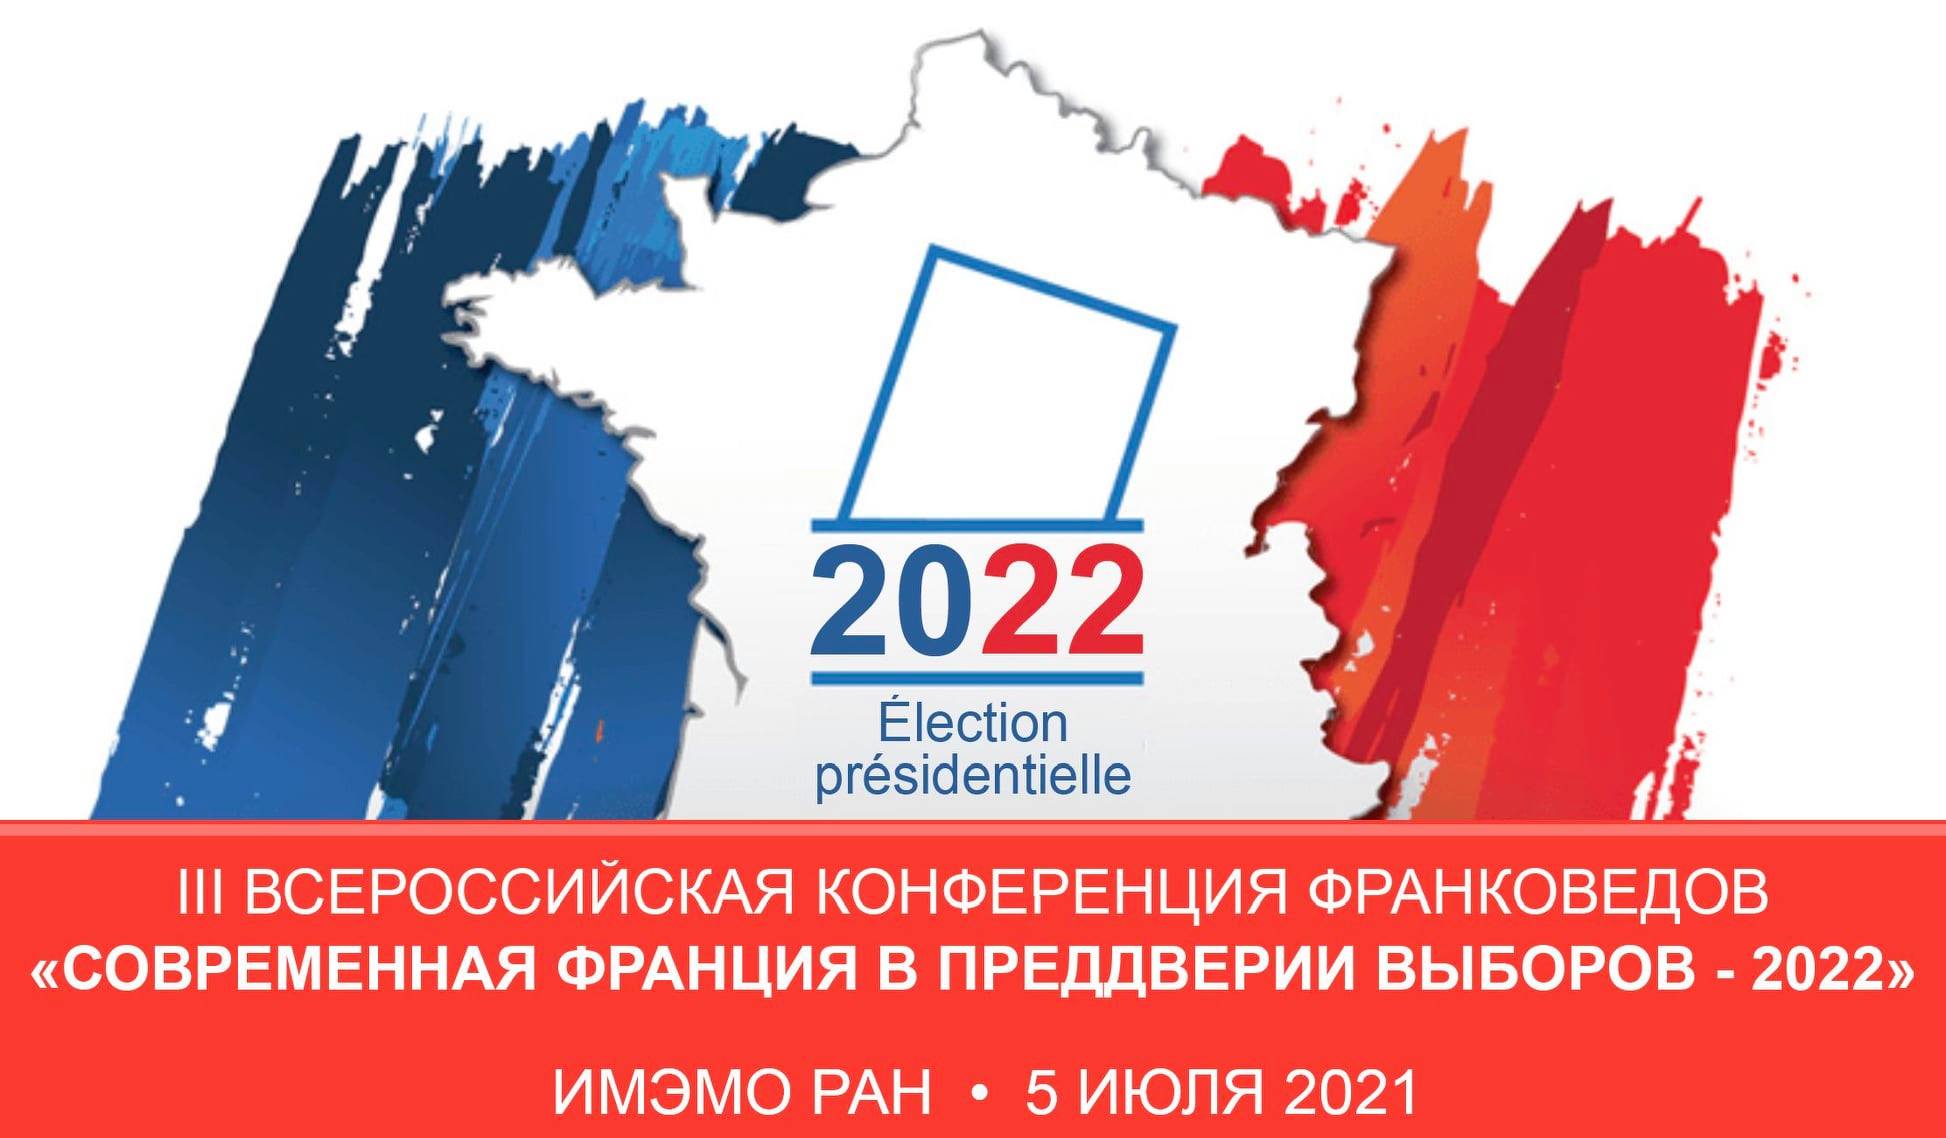 Участие в III Всероссийской научной конференции франковедов "Современная Франция в преддверии выборов – 2022"